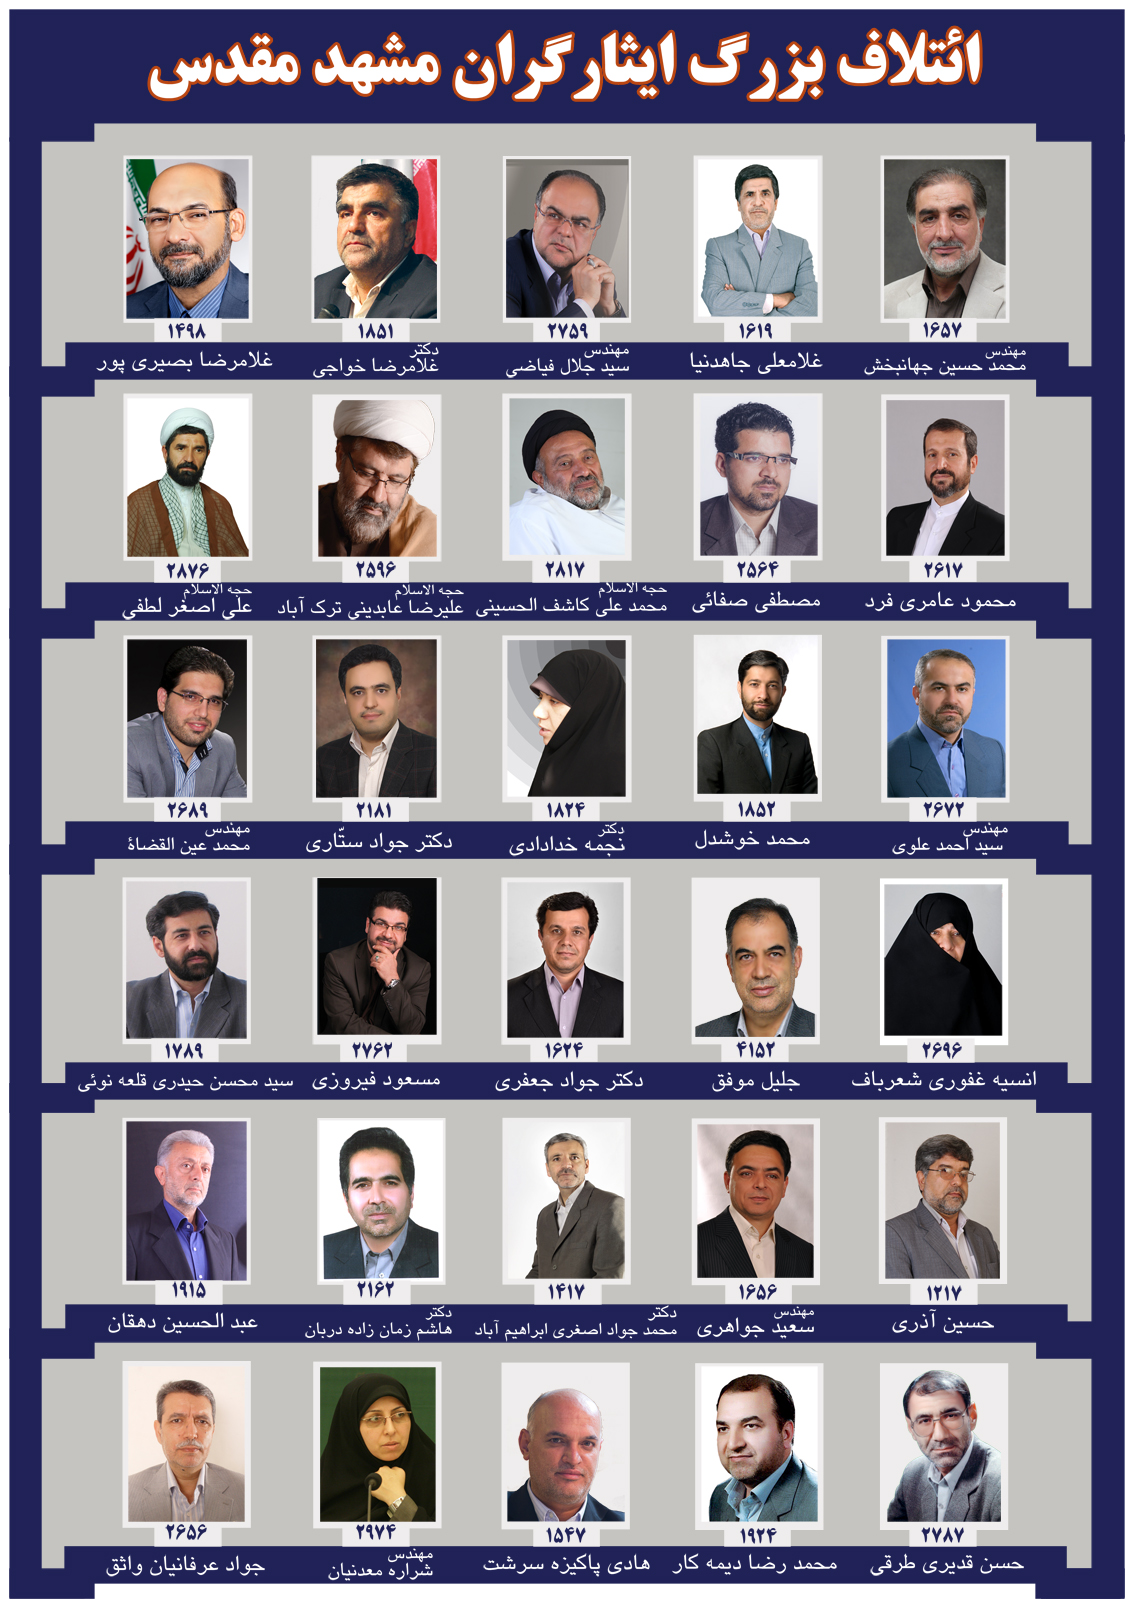 منتخبان ائتلاف بزرگ ایثارگران مشهد مقدس اعلام شد و اعلام چند لیست انتخاباتی دیگر برای شورای شهر مشهد